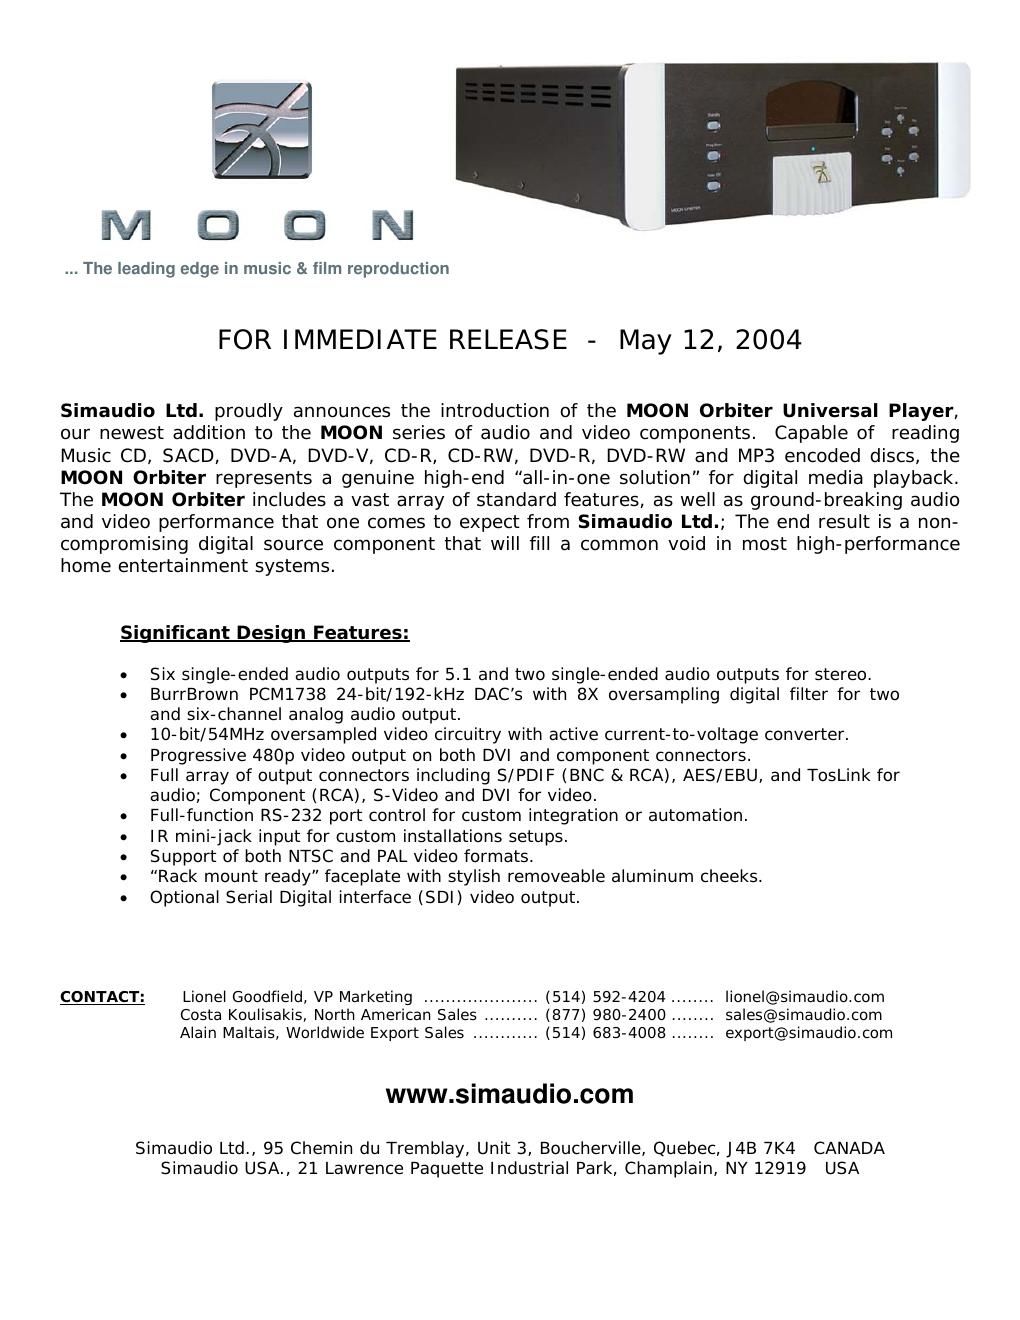 moon orbiter brochure